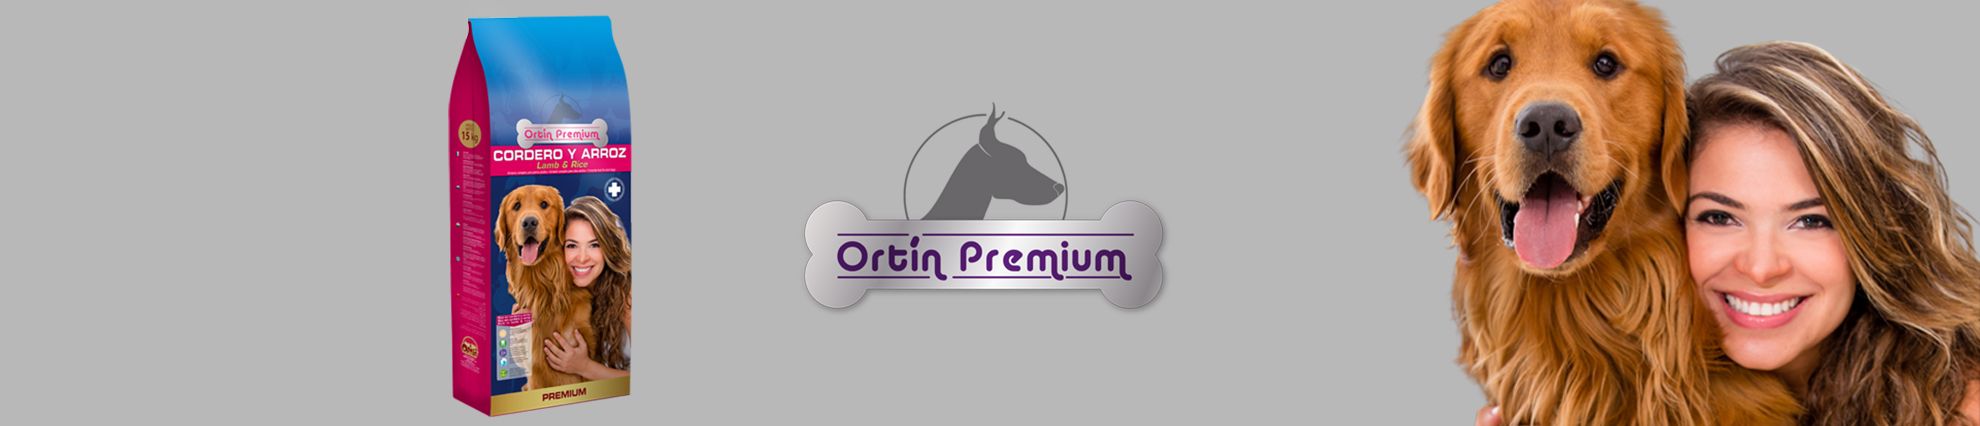 Ortín Premium